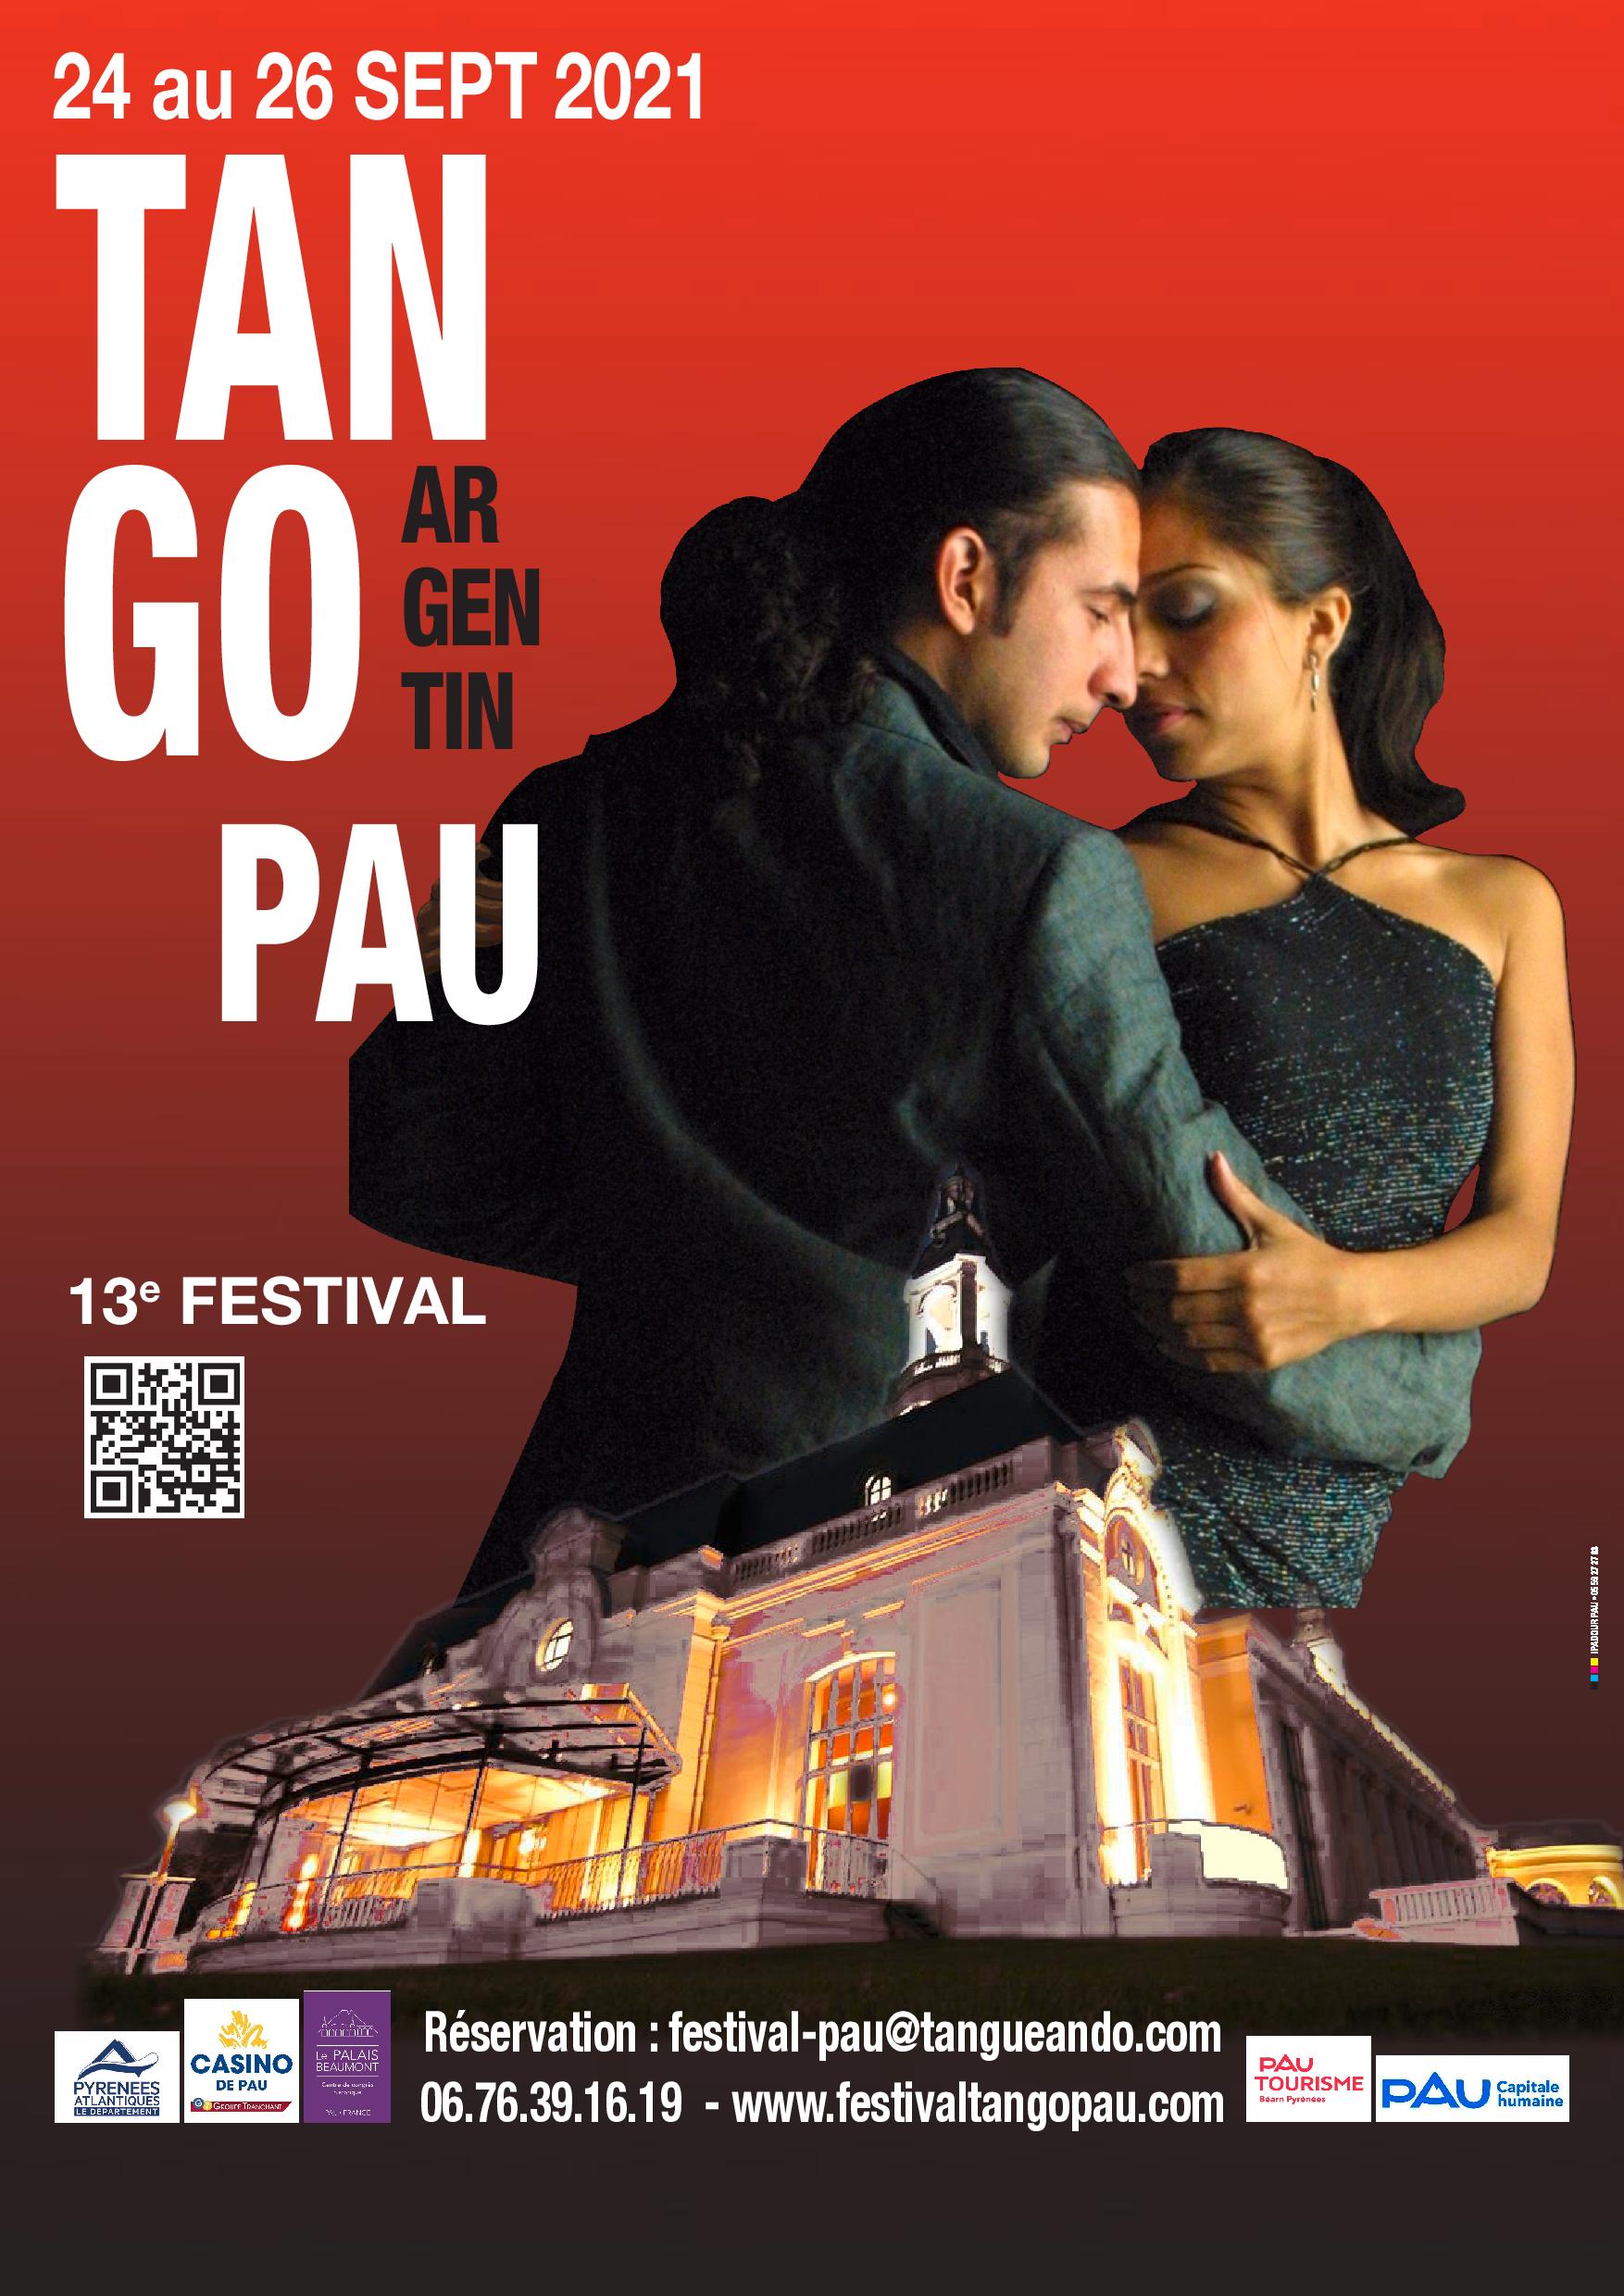 13e FESTIVAL de Tango Argentin - Pau Couleur Tango - du 24 au 26 septembre 2021